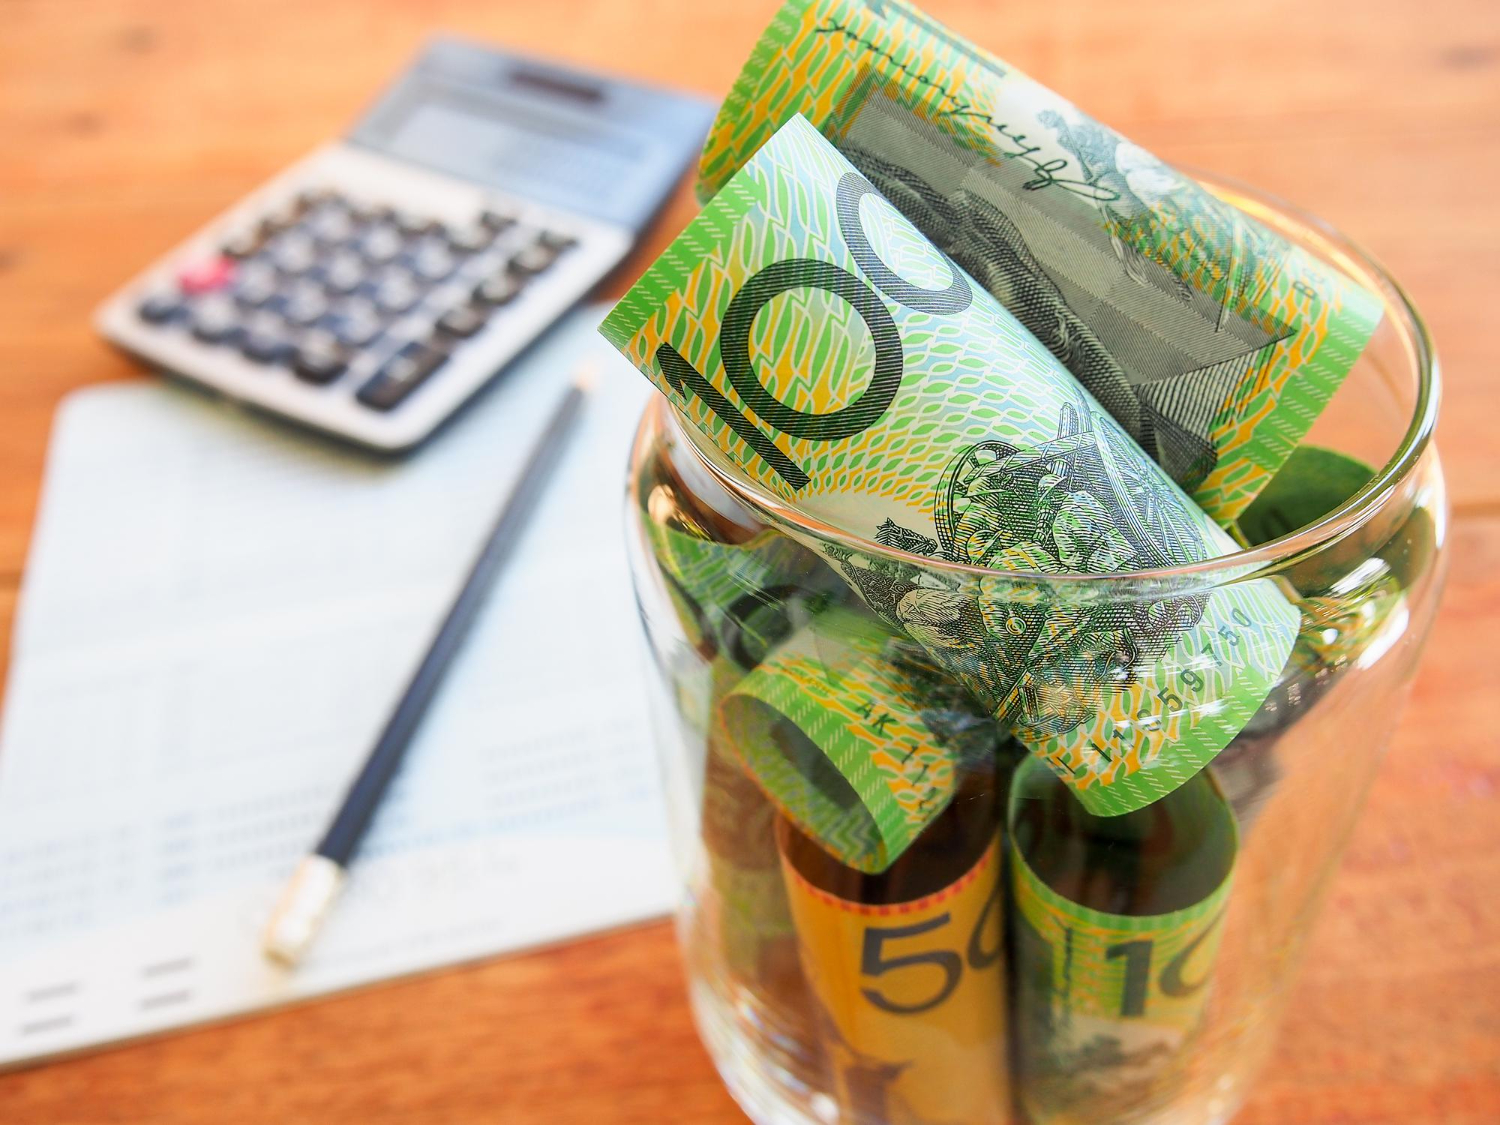 australia bank note account book calculator saving money concept